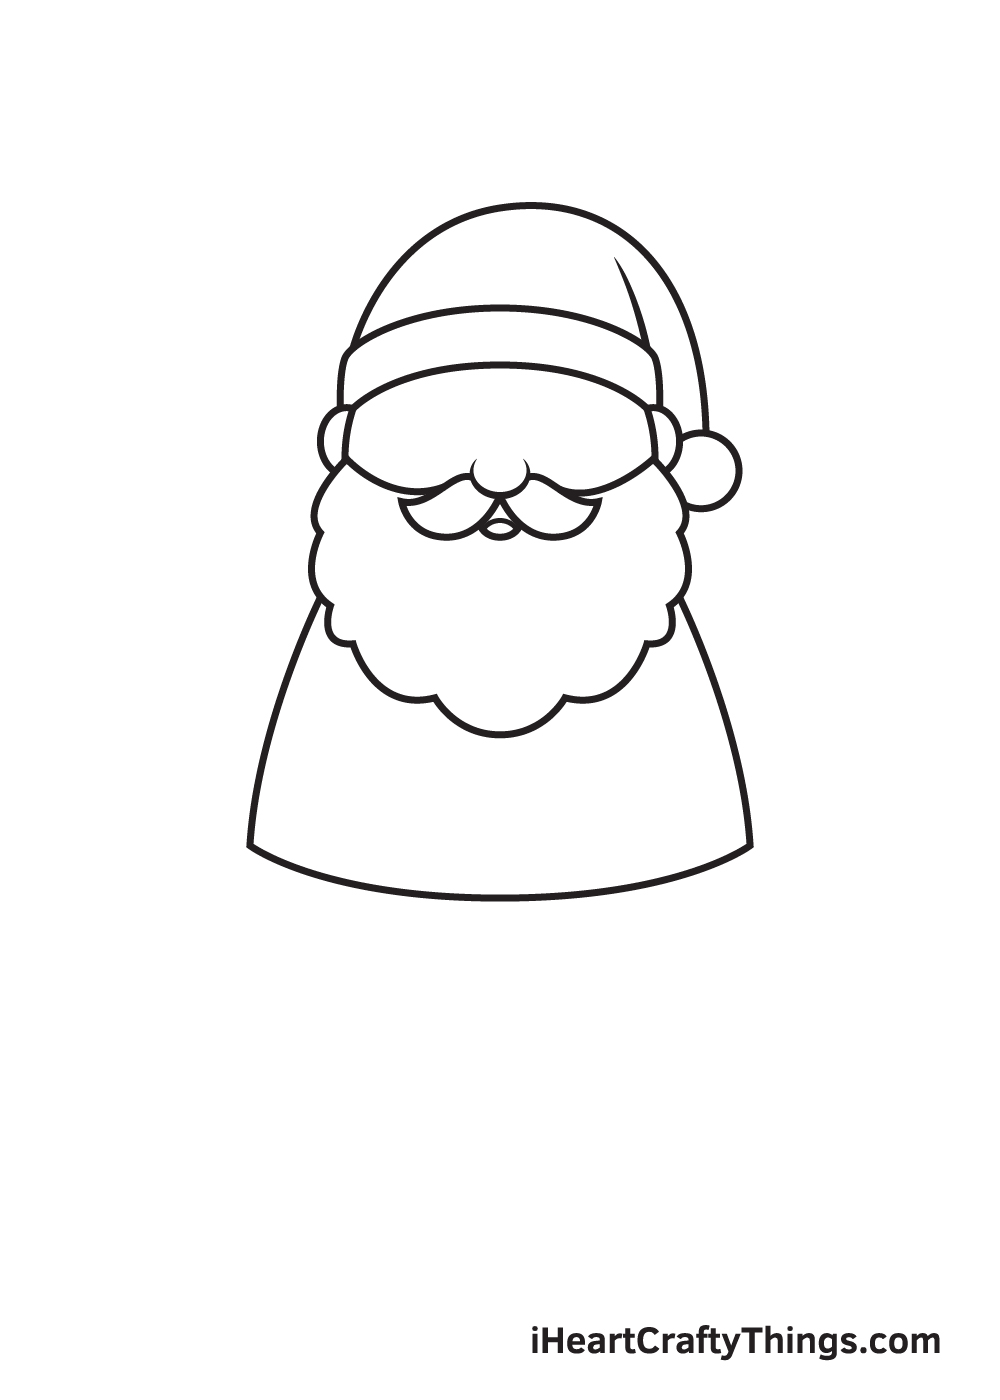 Santa Claus Drawing – Step 4